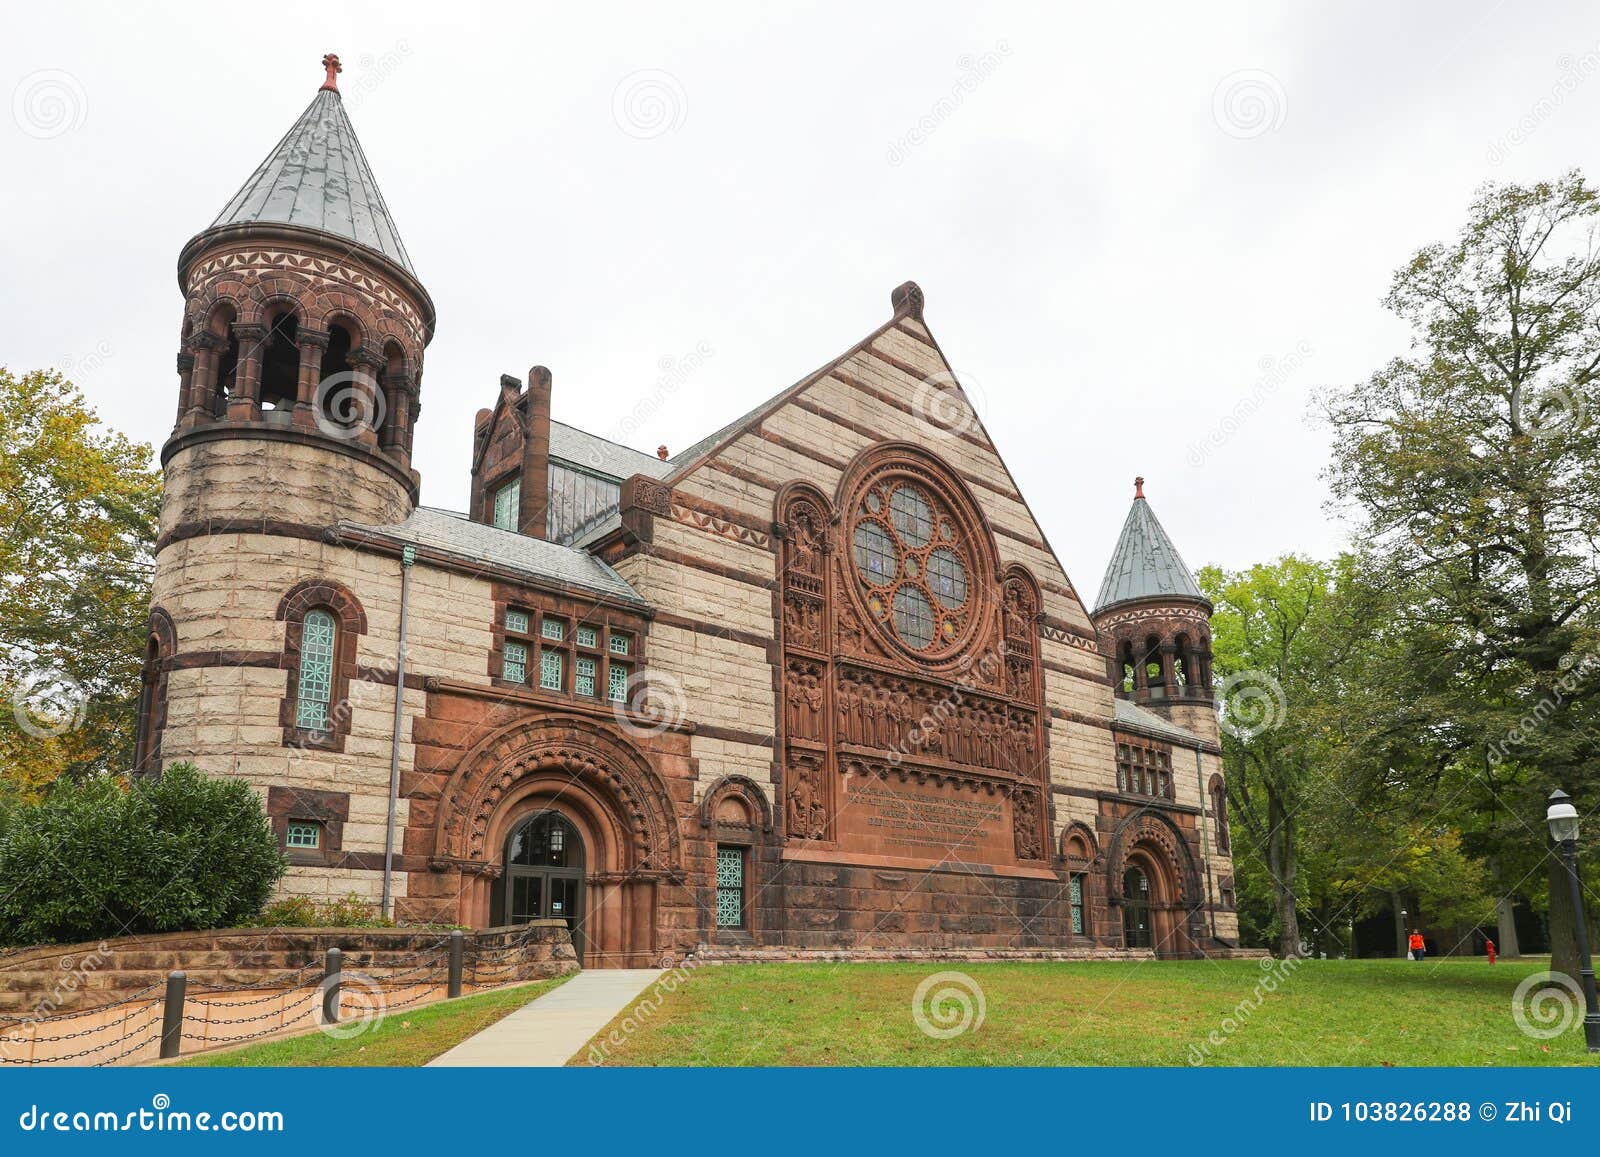 L'università Di Princeton è Ivy League University Privata Nel New Jersey,  U.S.A. Fotografia Stock Editoriale - Immagine di unito, americano: 103826288